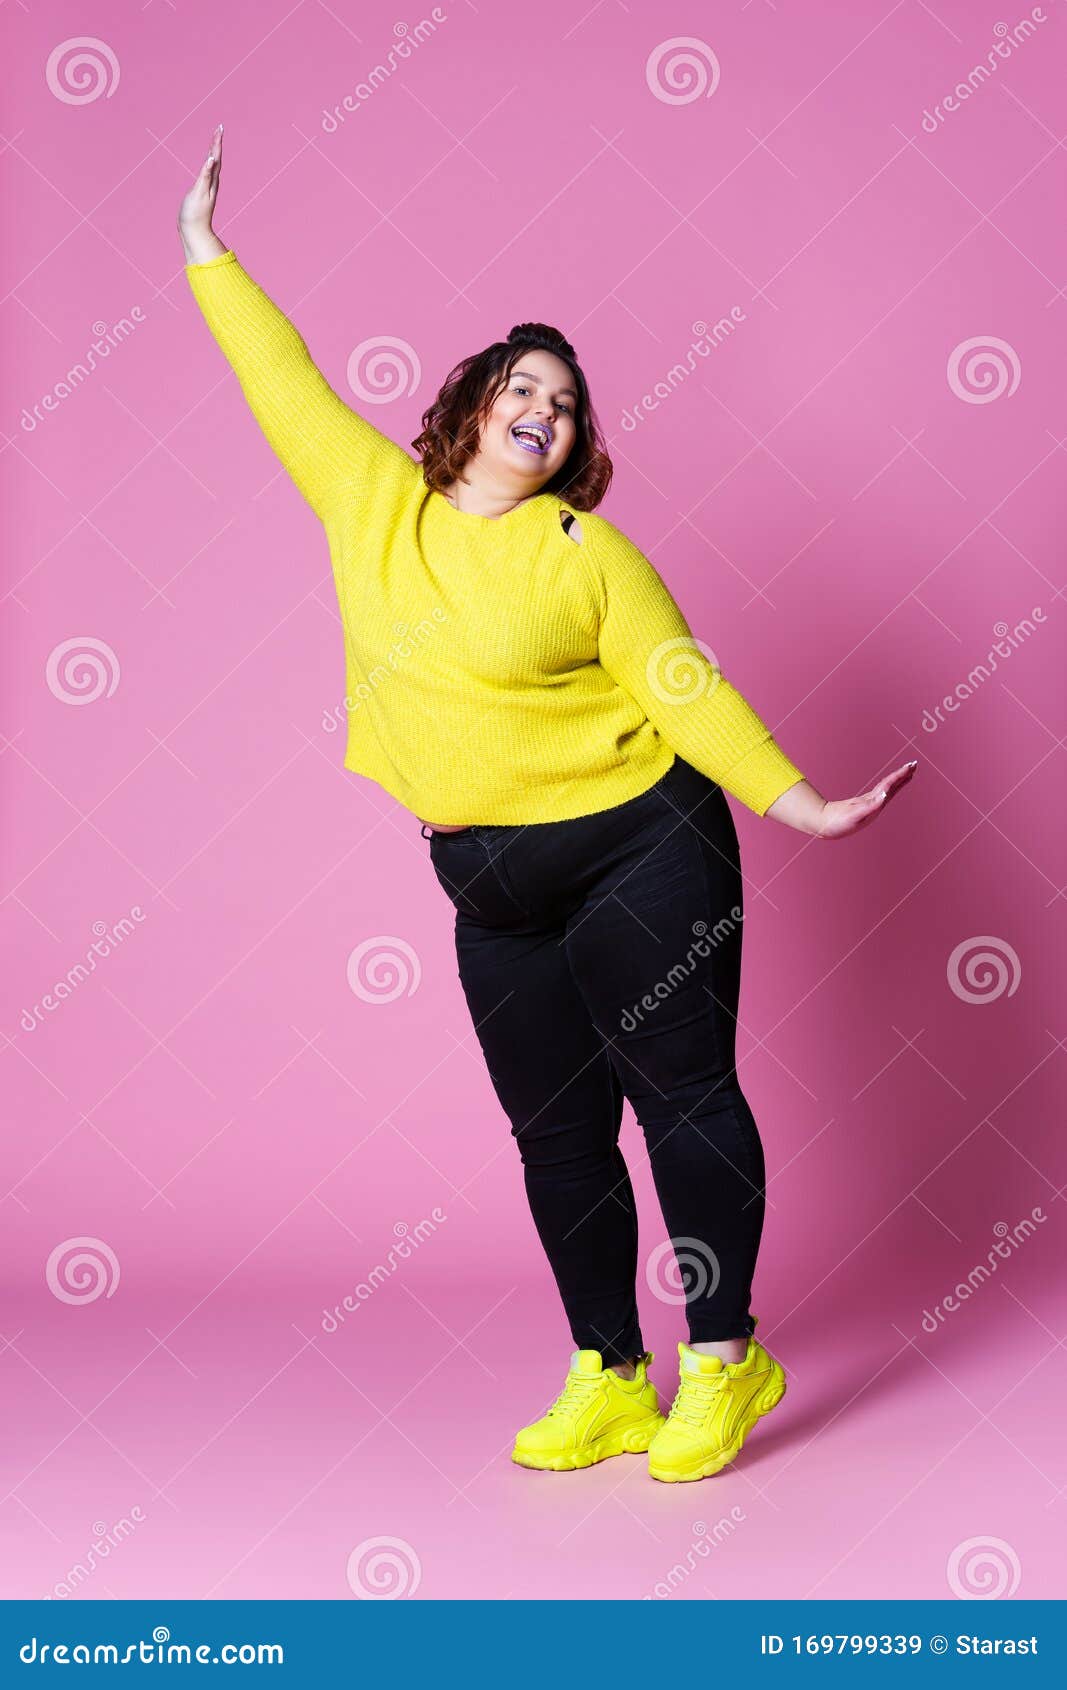 https://thumbs.dreamstime.com/z/mod%C3%A8le-plus-gaie-de-taille-dans-la-grosse-femme-v%C3%AAtements-sport-en-jeans-noir-et-pull-jaune-sur-le-fond-rose-portrait-complet-du-169799339.jpg